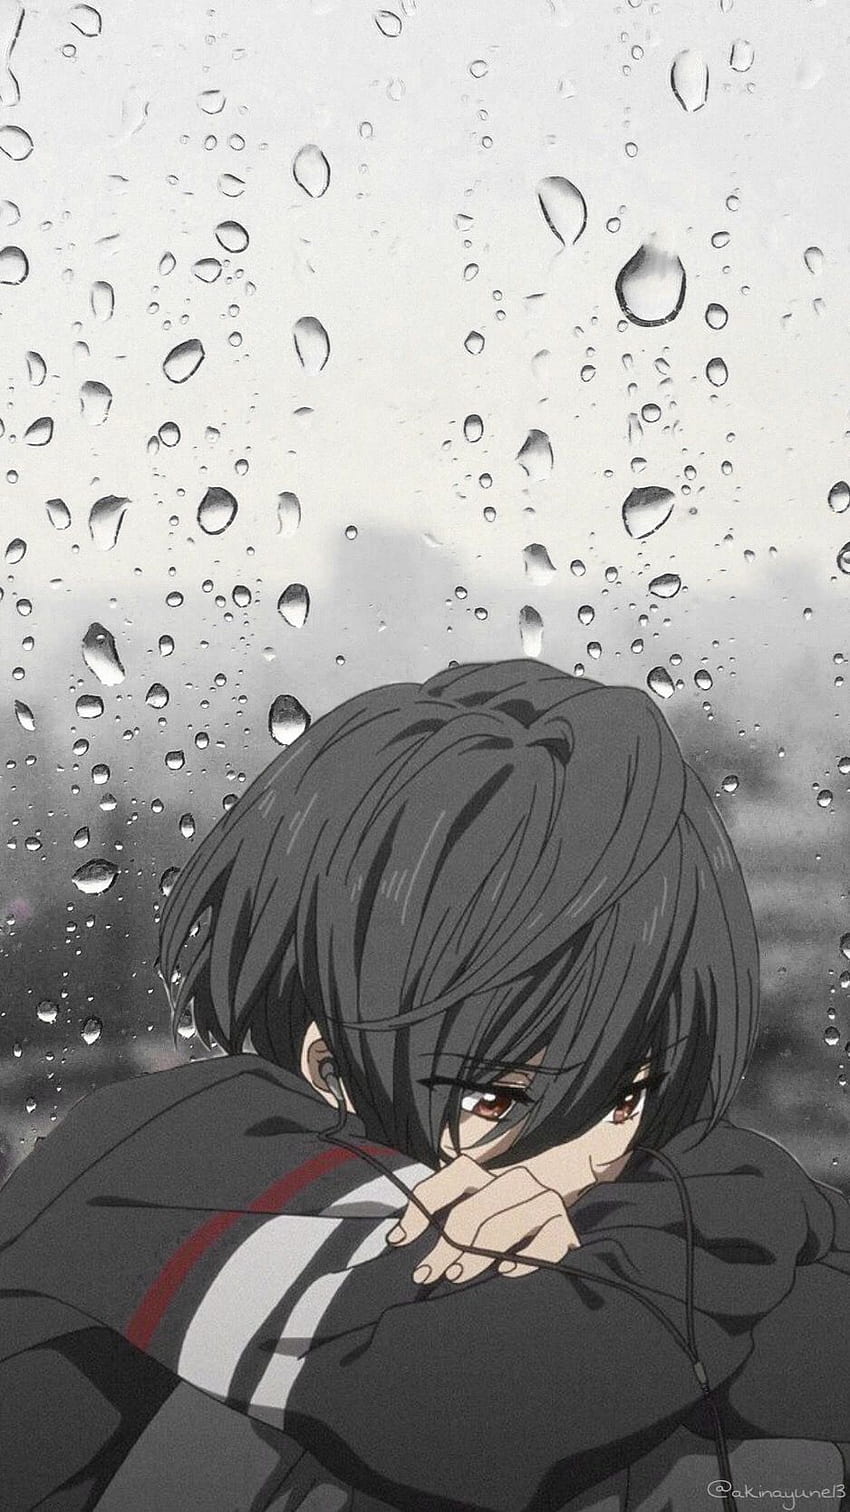 Với thế giới Anime đầy cảm xúc, Ikuya Kirishima, Sadboy, đều là những biểu tượng đẹp của niềm đau và tâm trạng sâu sắc. Hãy cảm nhận được sức mạnh của nghệ thuật với những bức ảnh Anime buồn tuyệt đẹp được chọn lựa kỹ lưỡng cho chất lượng HD trên các thiết bị của bạn.